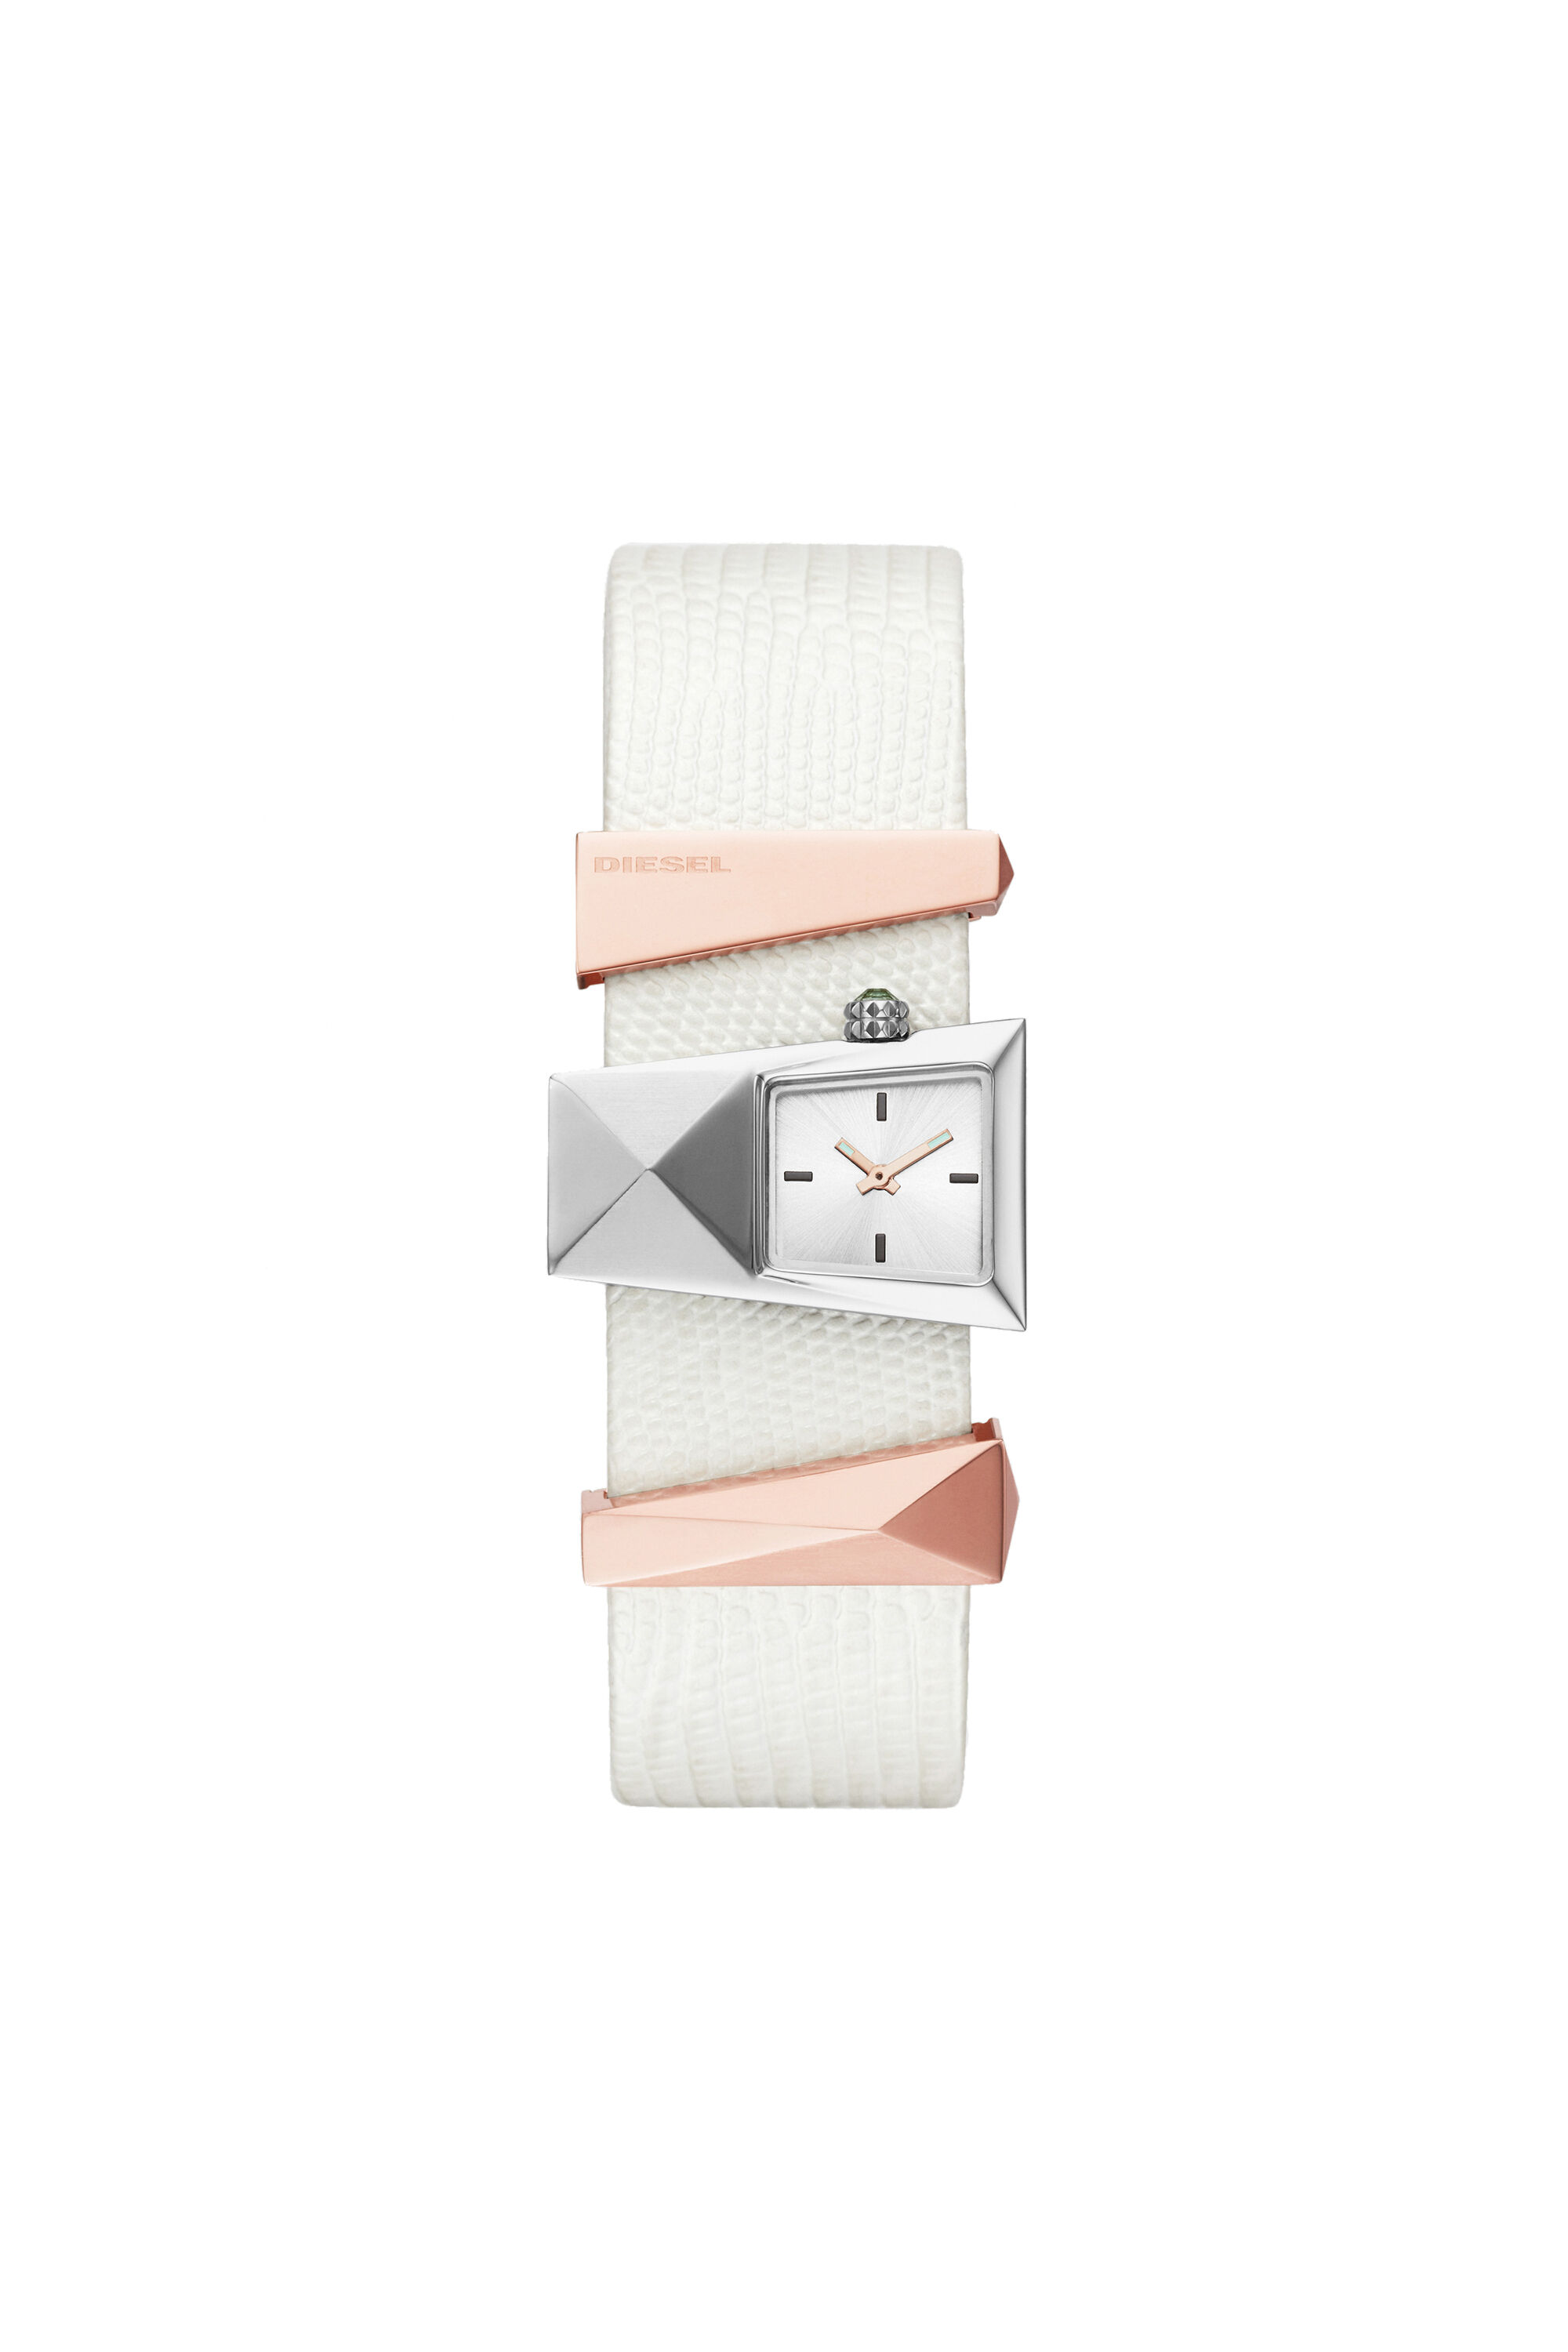 注目ブランド 【DIESEL】腕時計 CATERINA・DZ5586 腕時計(アナログ